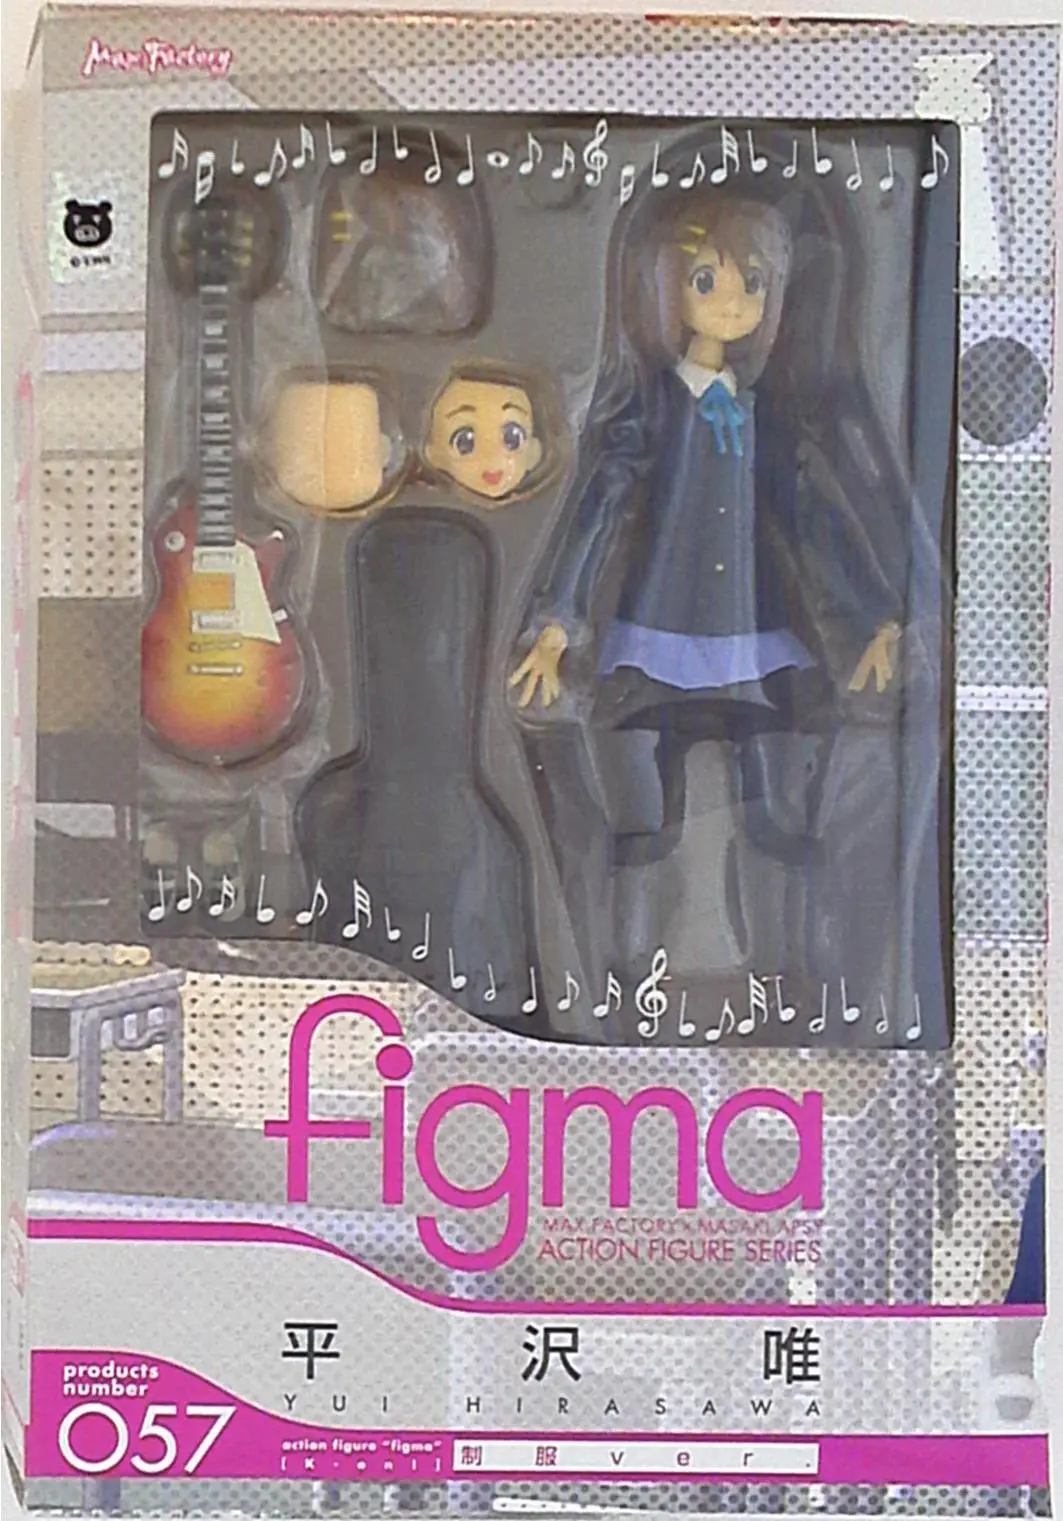 figma - K-ON! / Hirasawa Yui